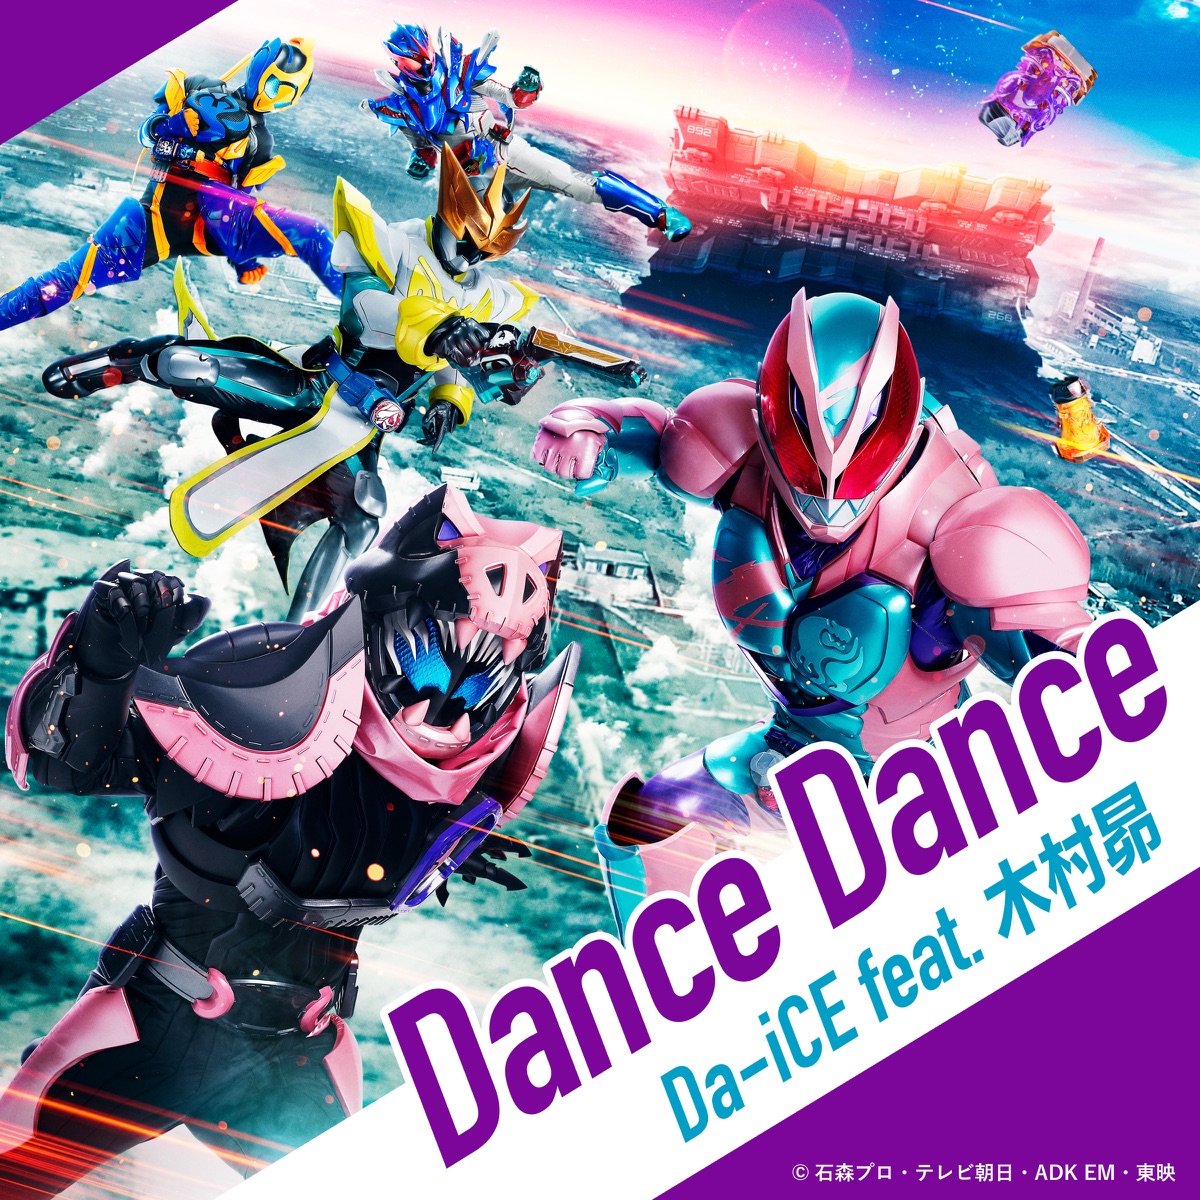 Cover art for『Da-iCE feat. Subaru Kimura - Dance Dance』from the release『Dance Dance (